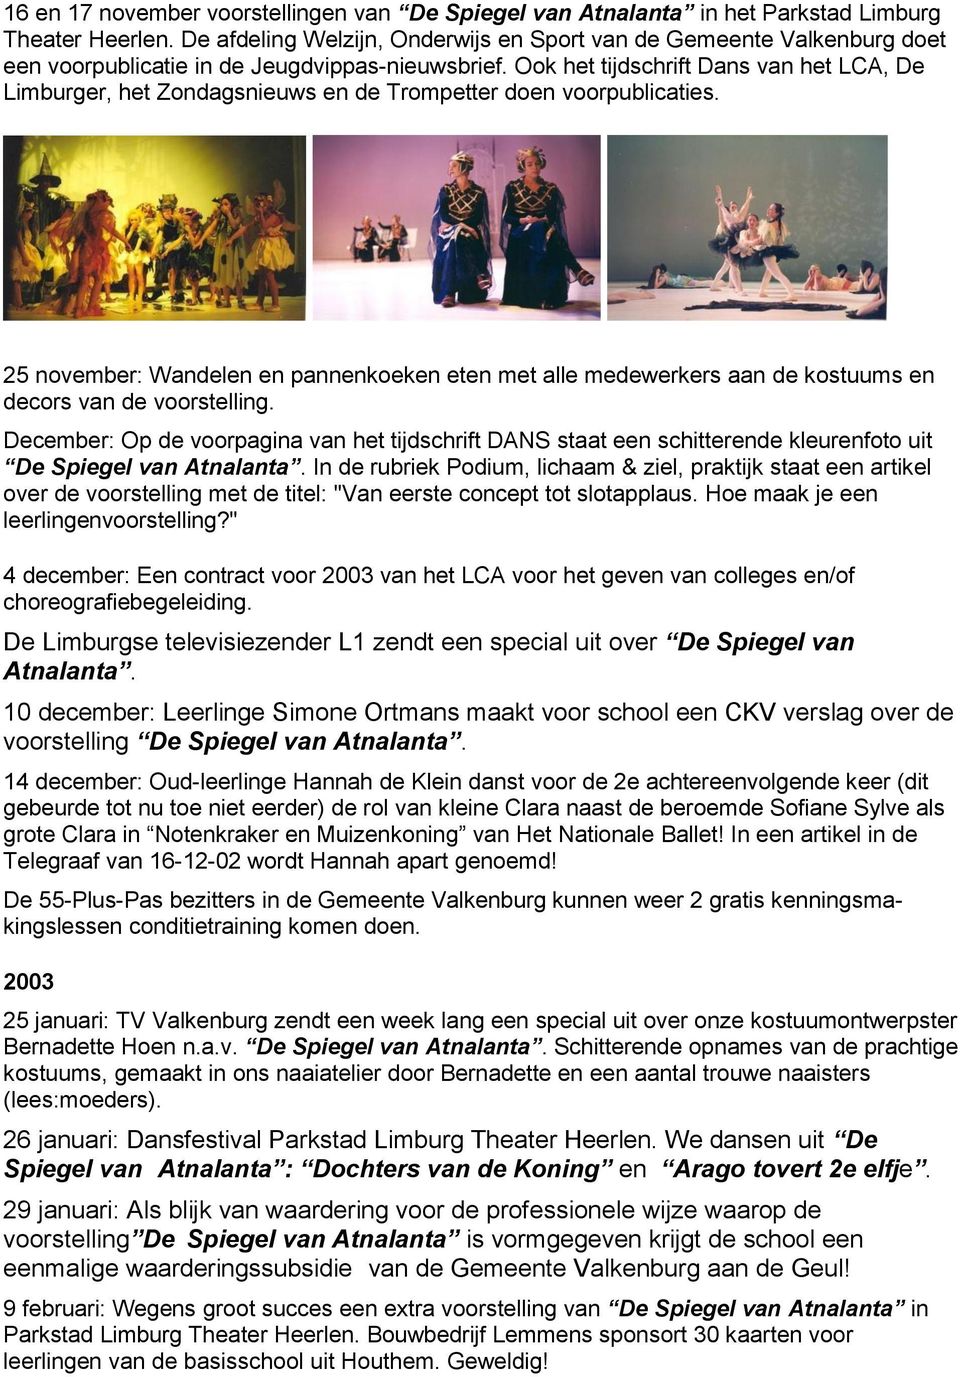 Ook het tijdschrift Dans van het LCA, De Limburger, het Zondagsnieuws en de Trompetter doen voorpublicaties.